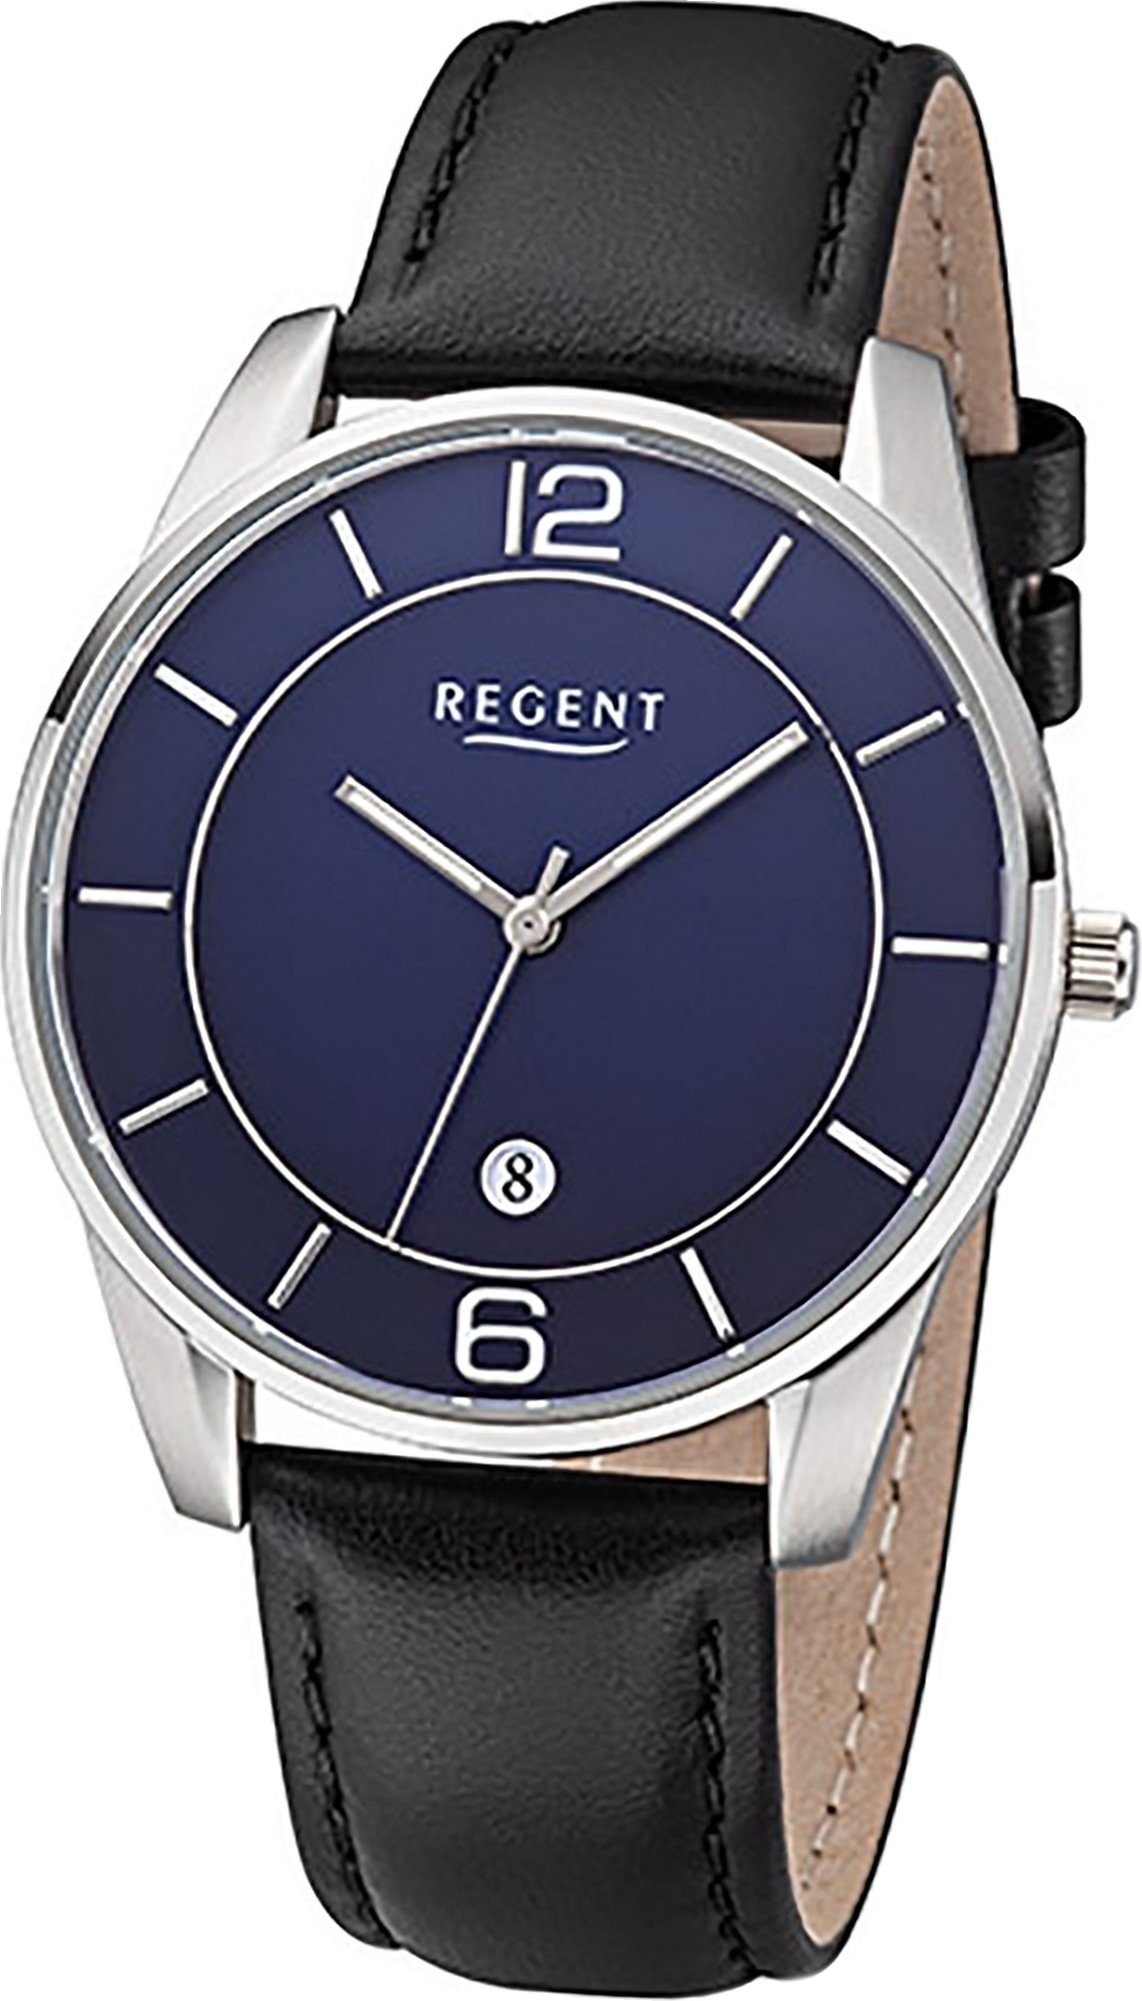 Regent Quarzuhr Regent Leder Herren Uhr F-1235 Analog, Herrenuhr Lederarmband schwarz, rundes Gehäuse, groß (ca. 40mm) | Quarzuhren